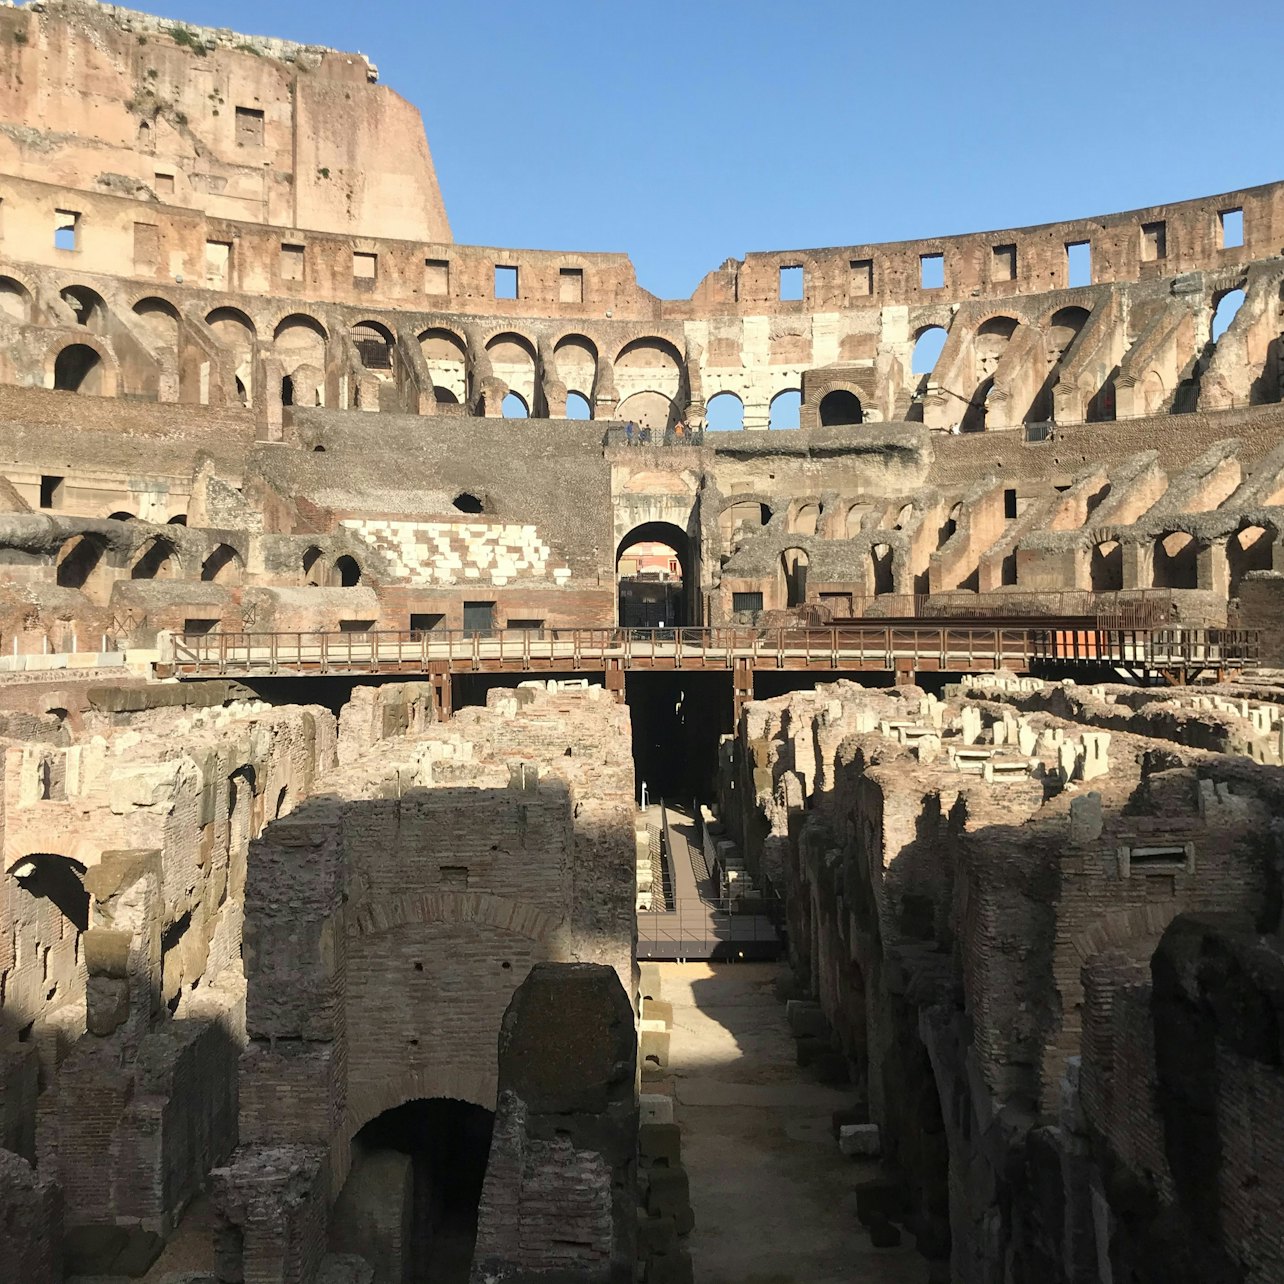 Visita guiada al Coliseo, Museos Vaticanos y Capilla Sixtina - Alojamientos en Roma